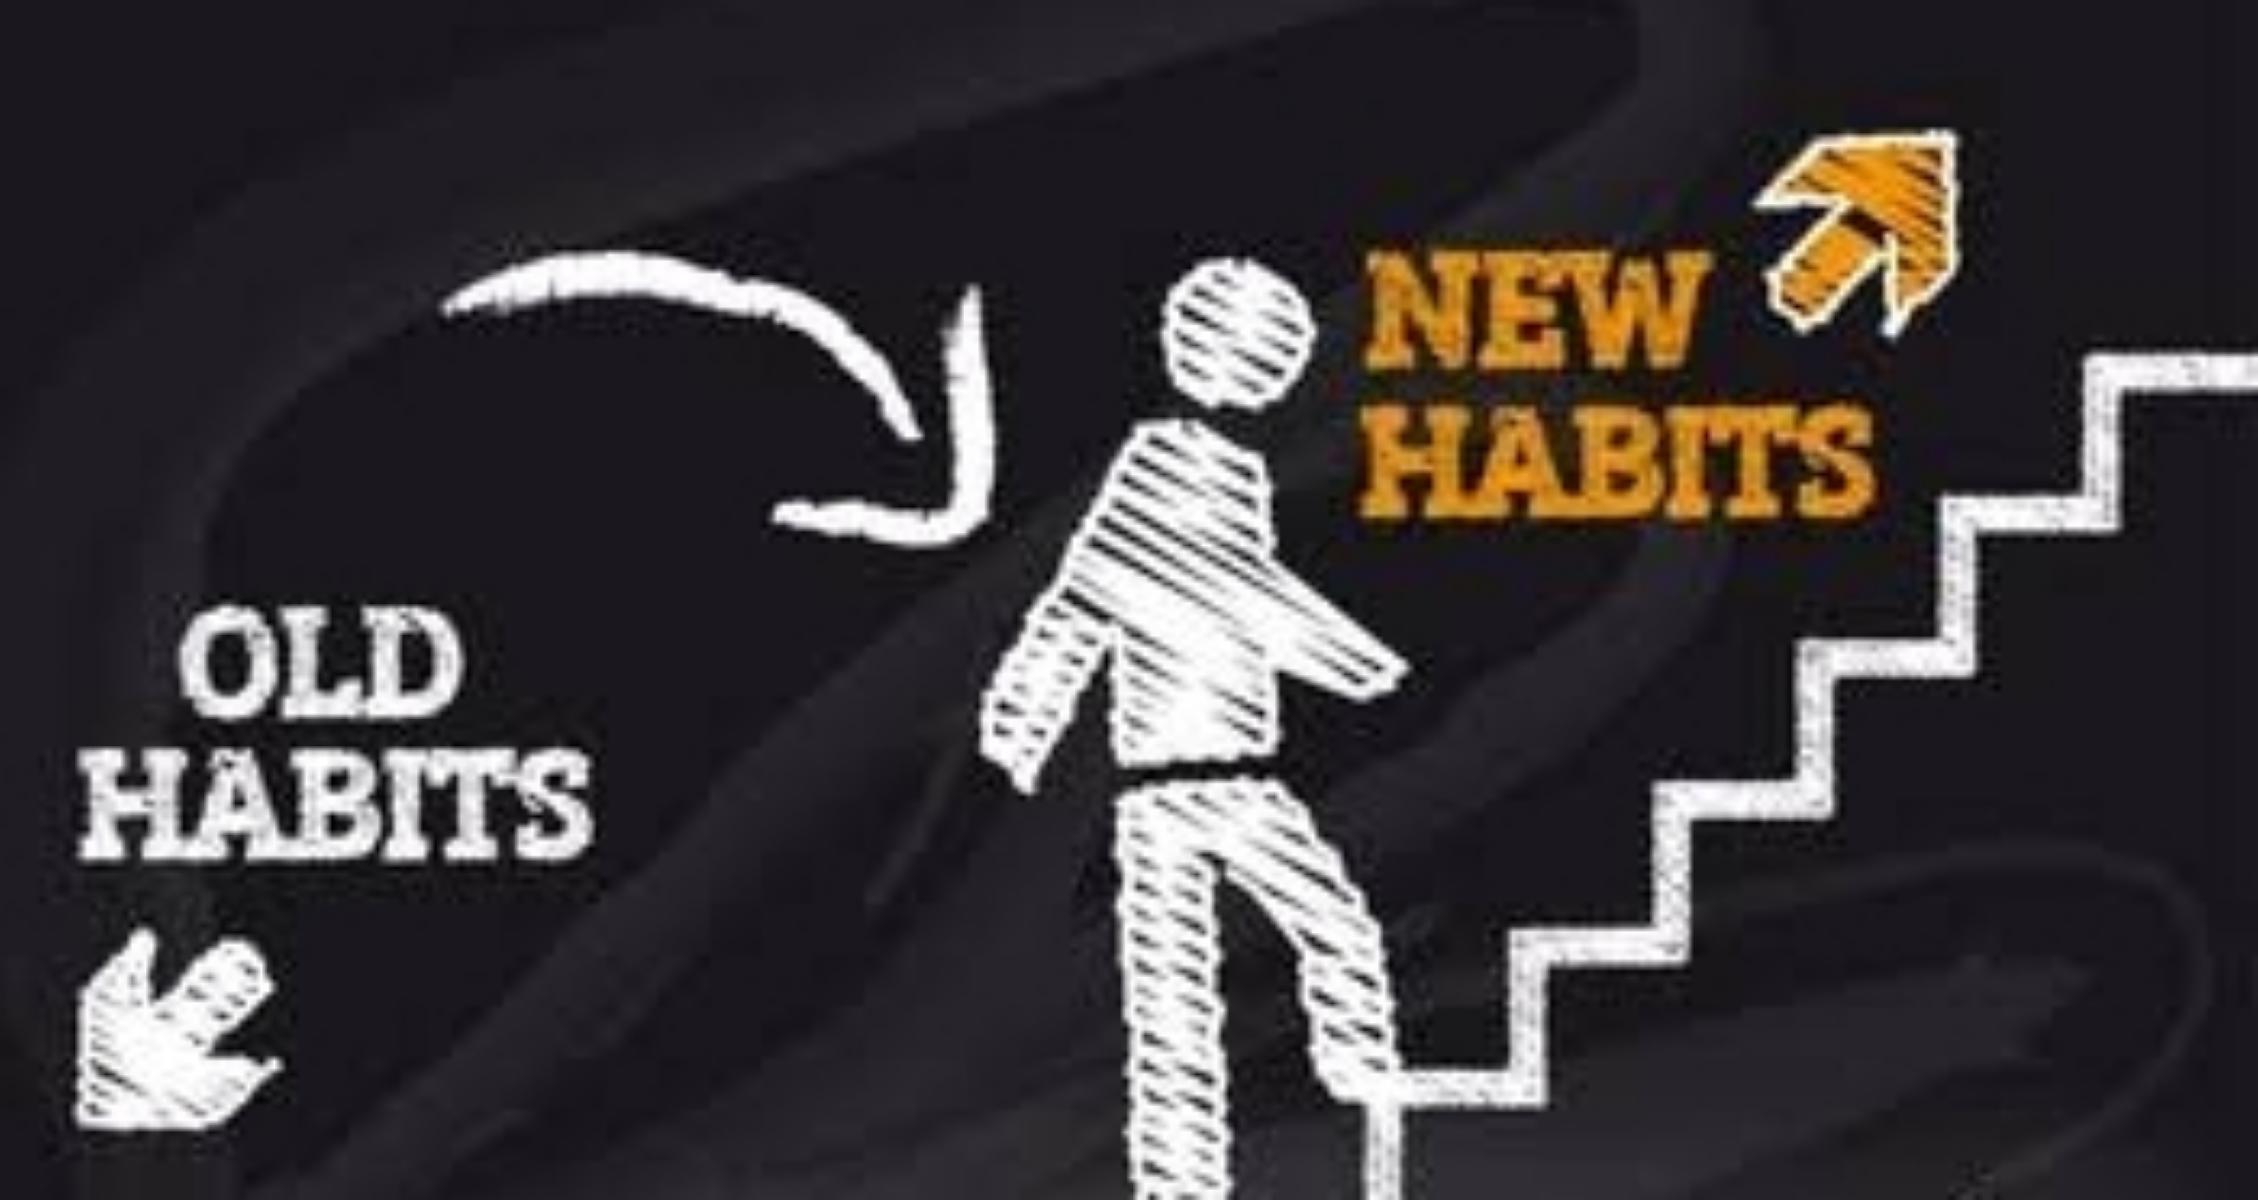 6. Establish New Habits